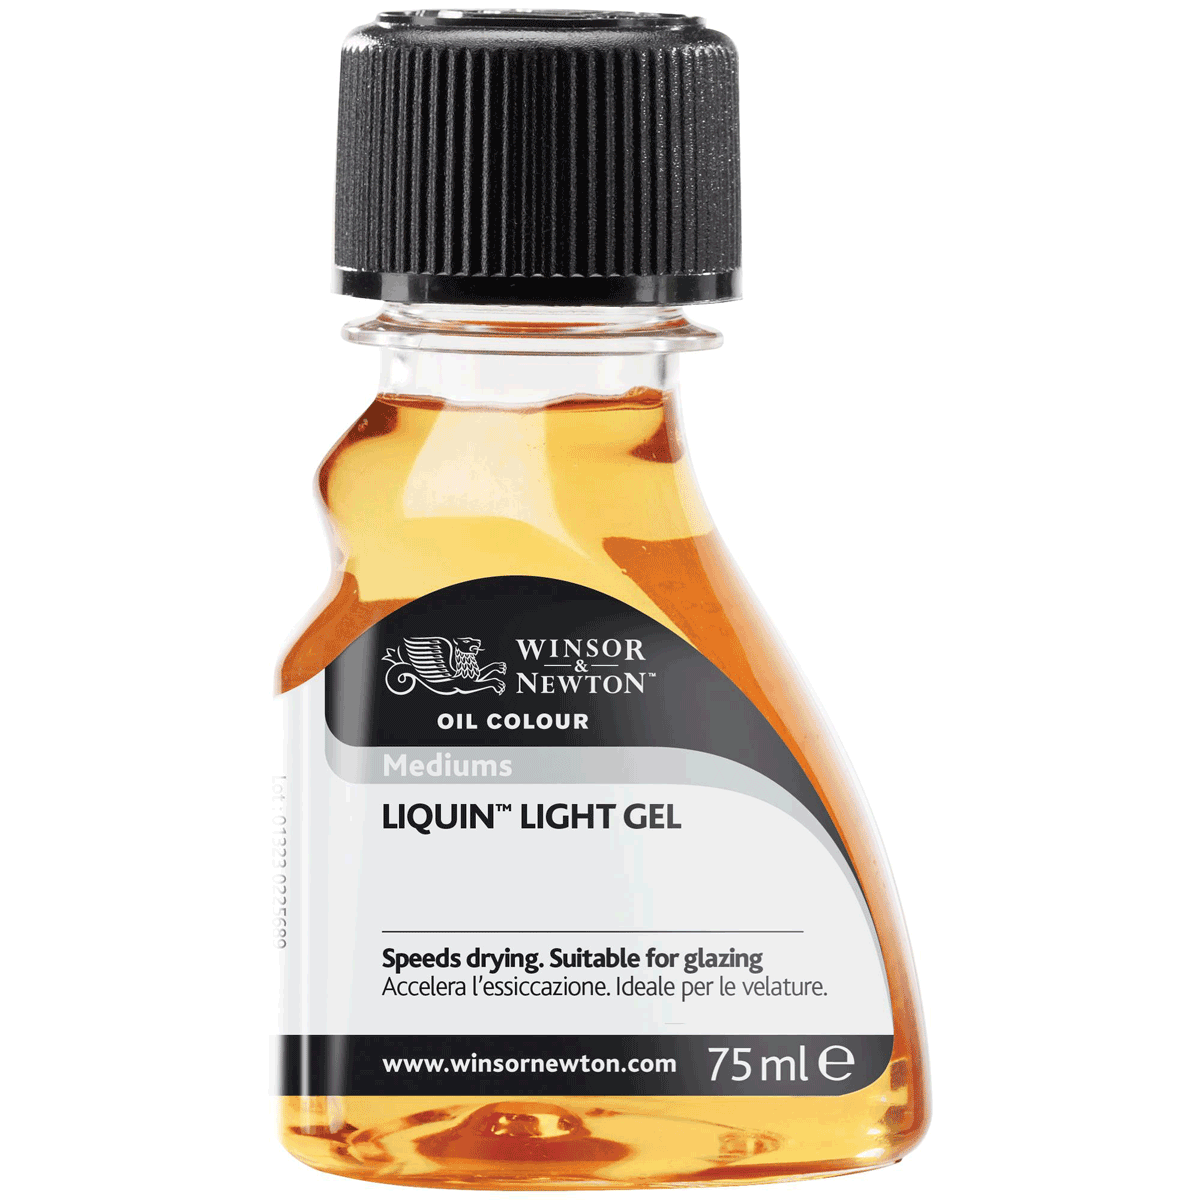 Winsor & Newton Liquin Light Gel Medium 75 ml